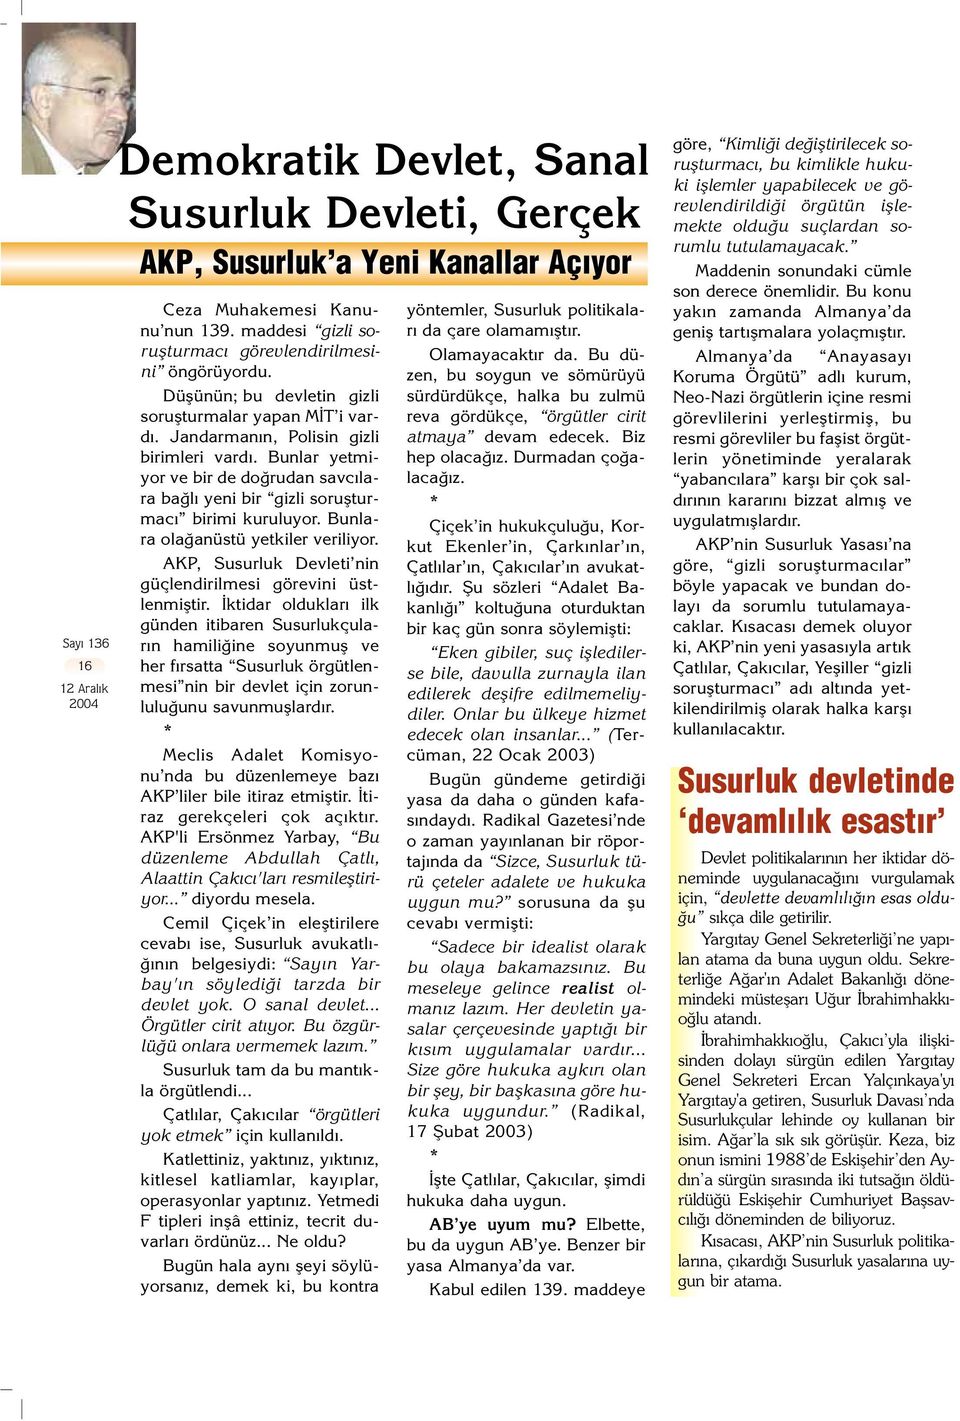 Bunlara ola anüstü yetkiler veriliyor. AKP, Susurluk Devleti nin güçlendirilmesi görevini üstlenmifltir.